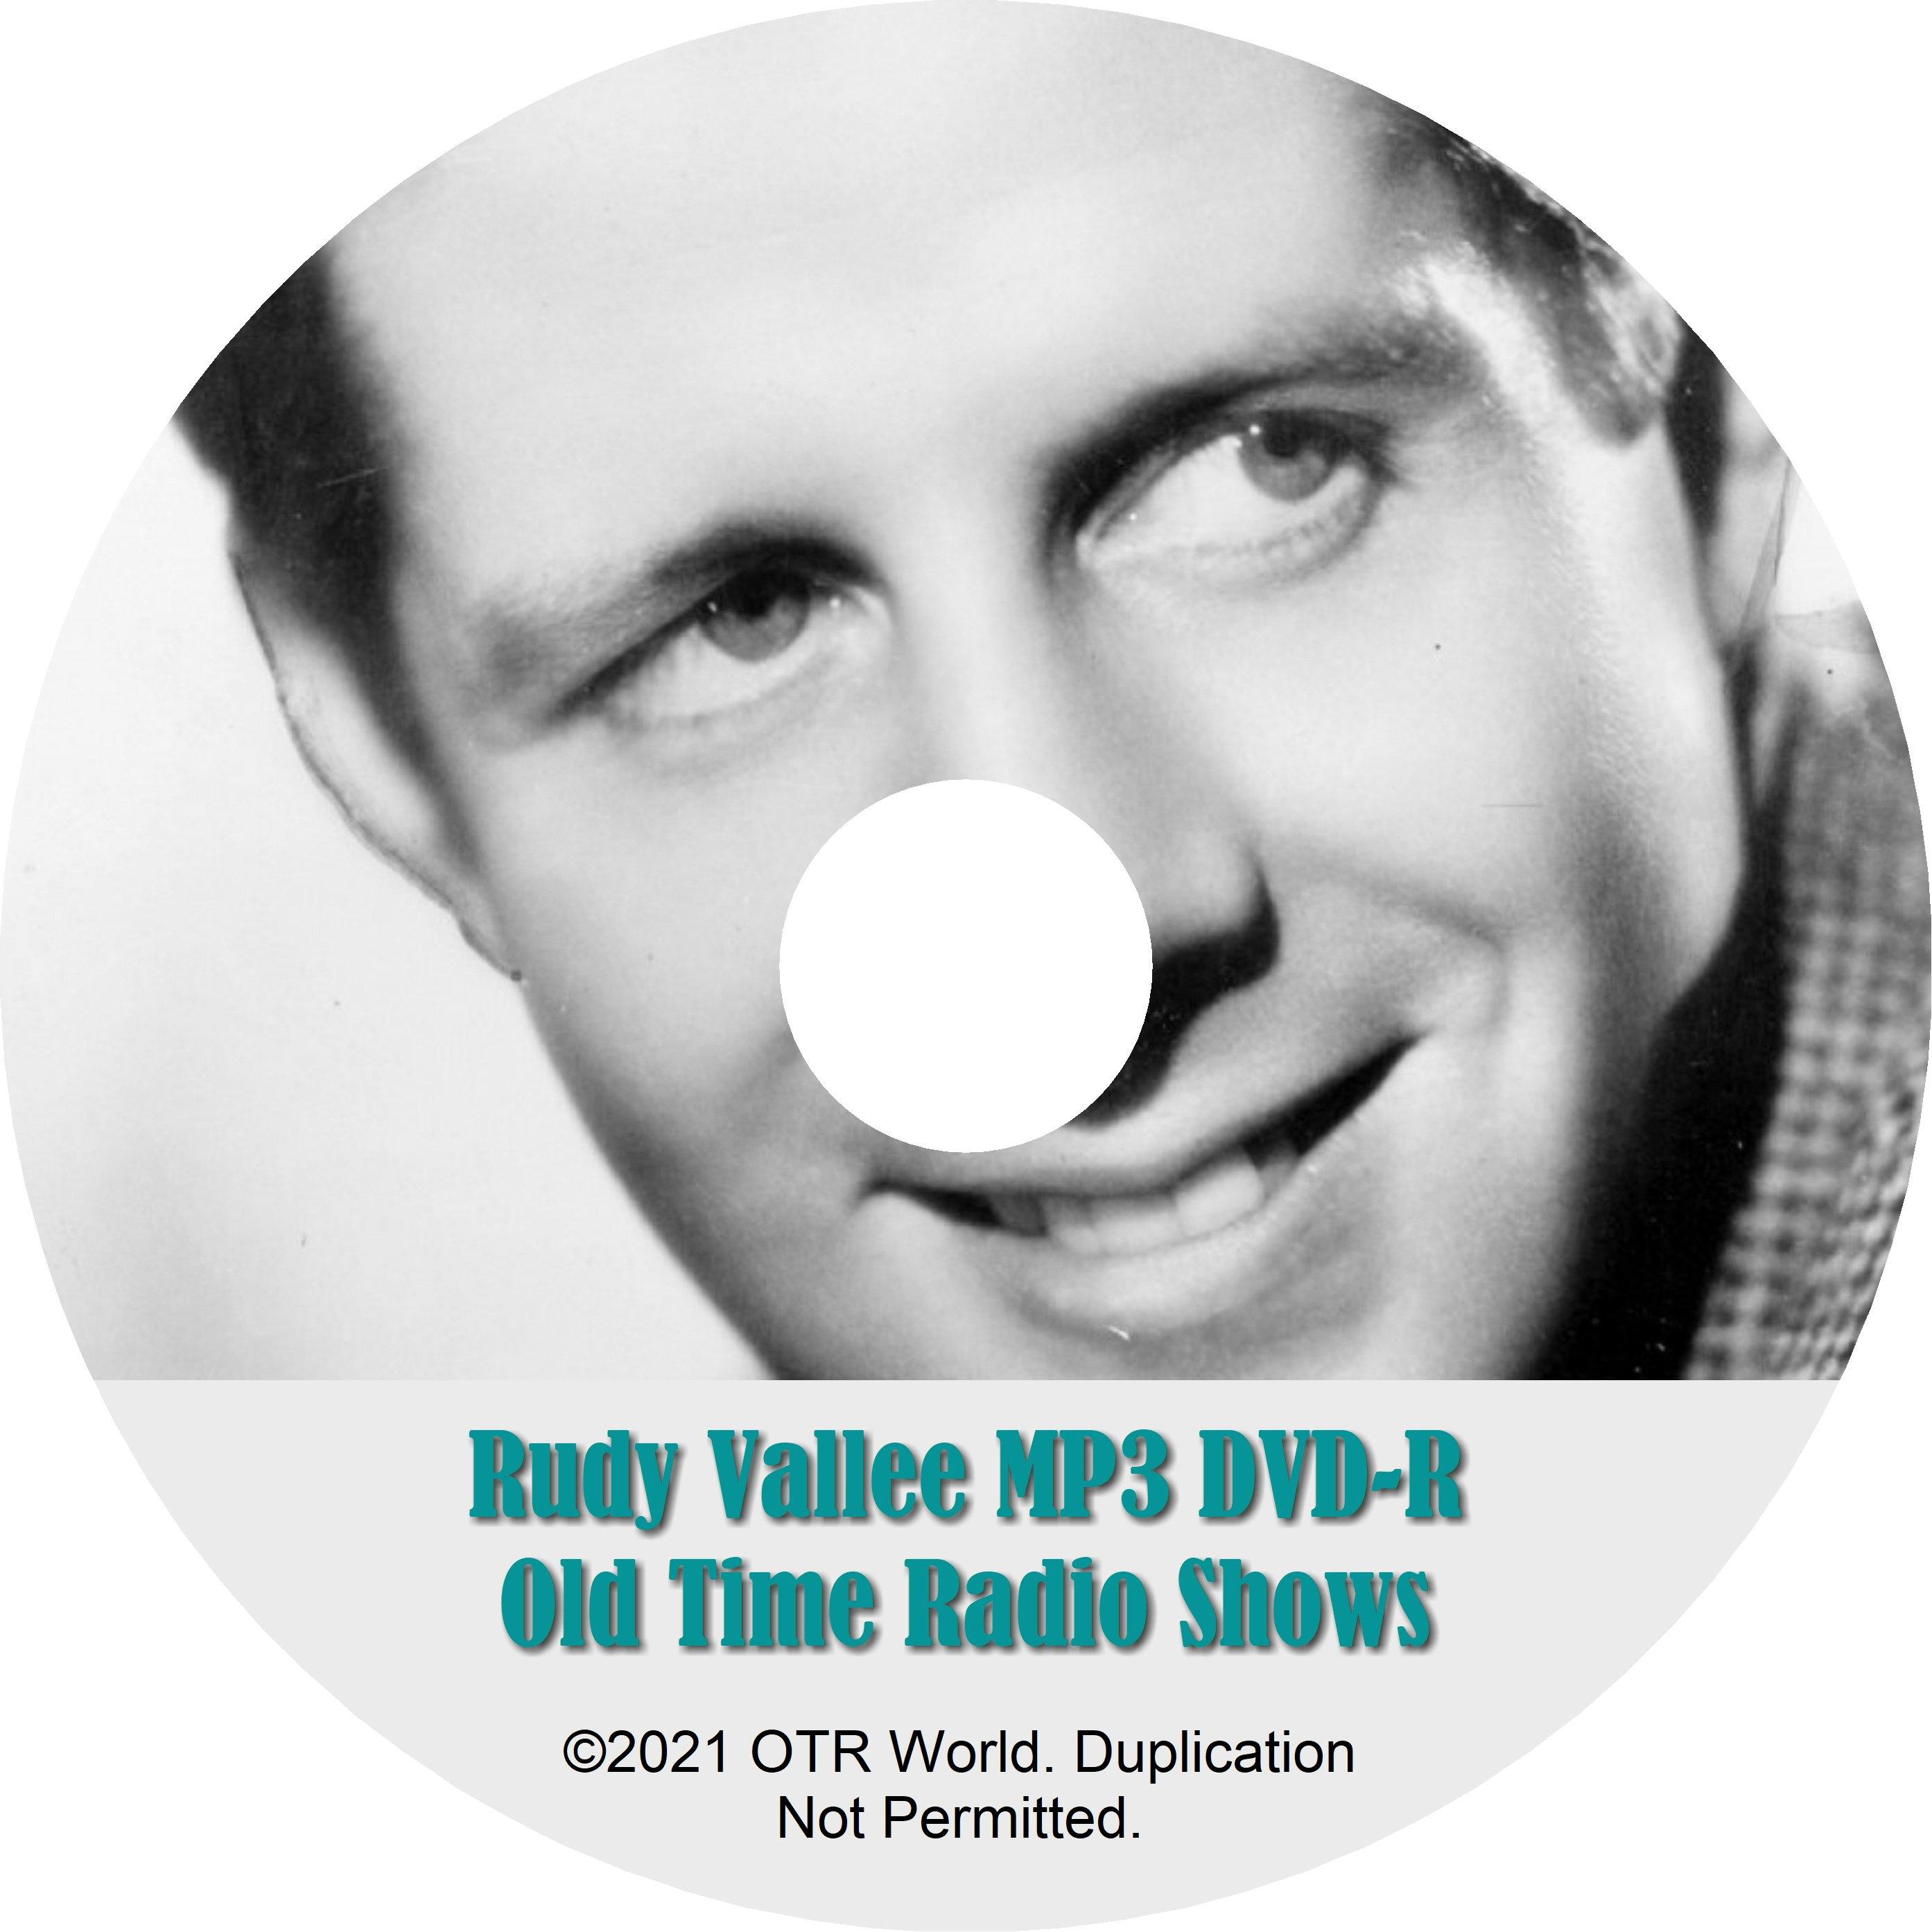 Rudy Vallee Fleischmann's Yeast Hour OTR OTRS Old Time Radio Shows MP3 On DVD-R 115 Episodes - OTR World